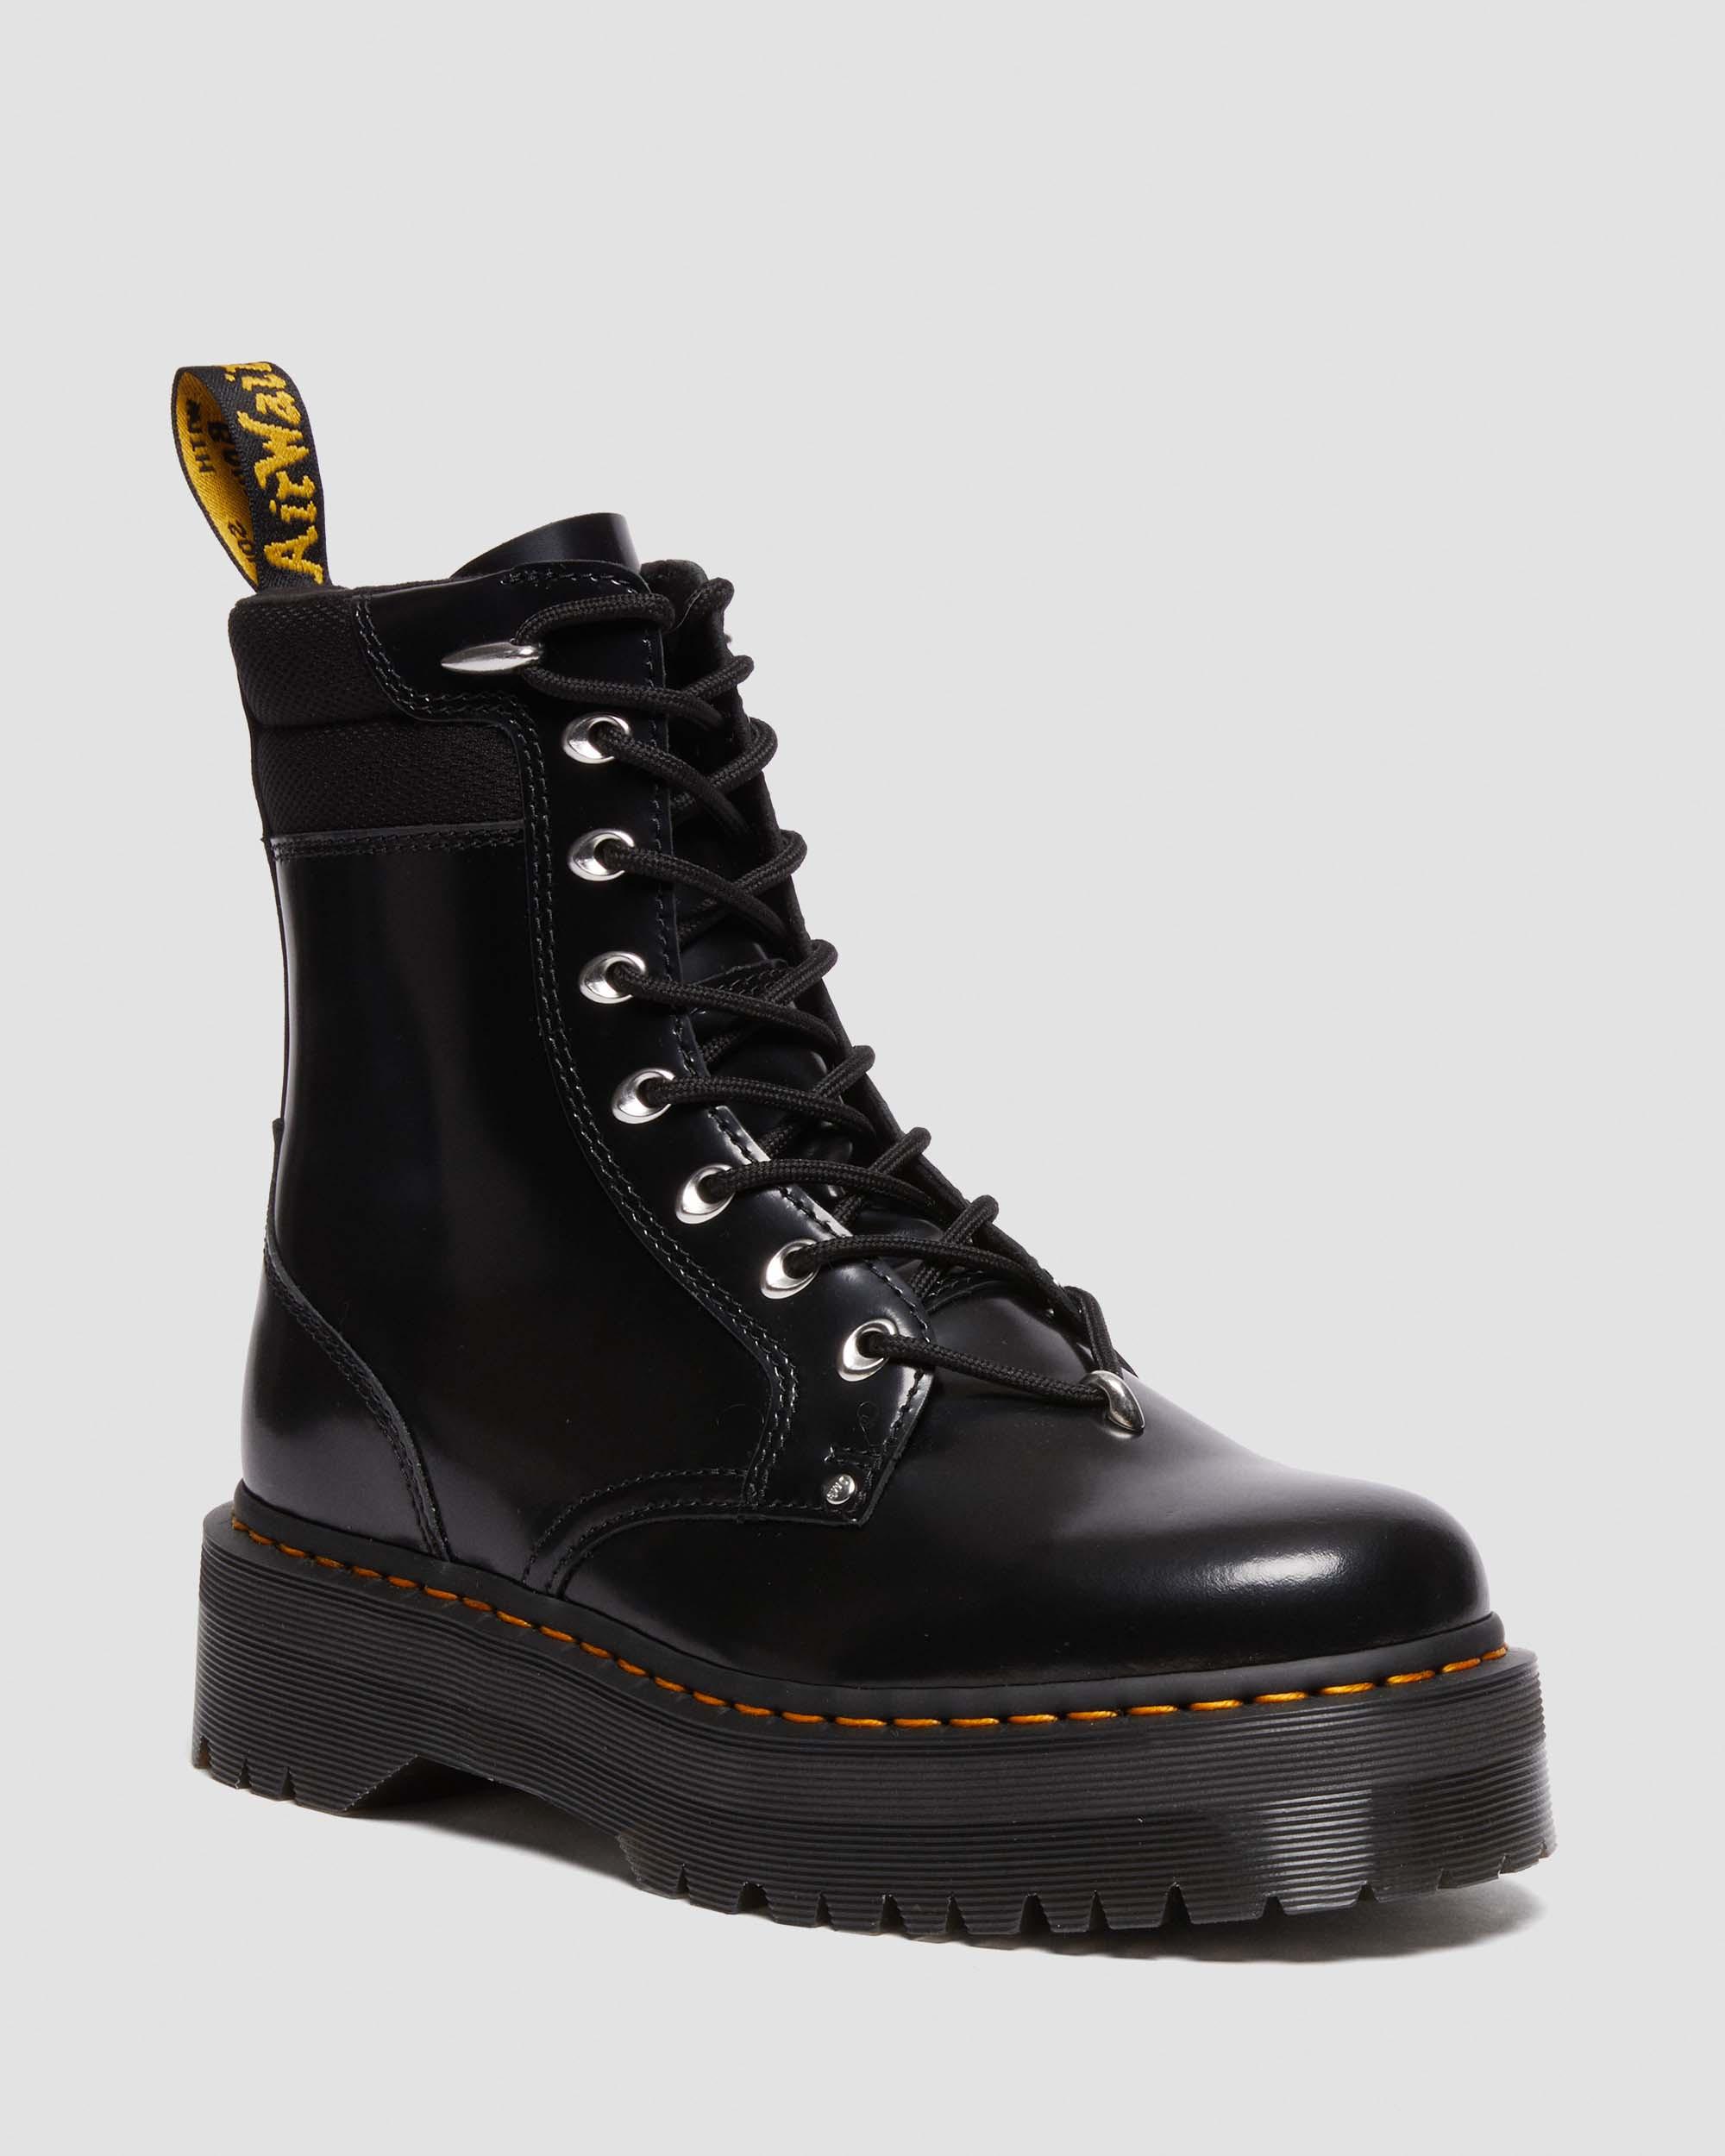 Dr. Martens Jadon II platform boots. Black leather hardware